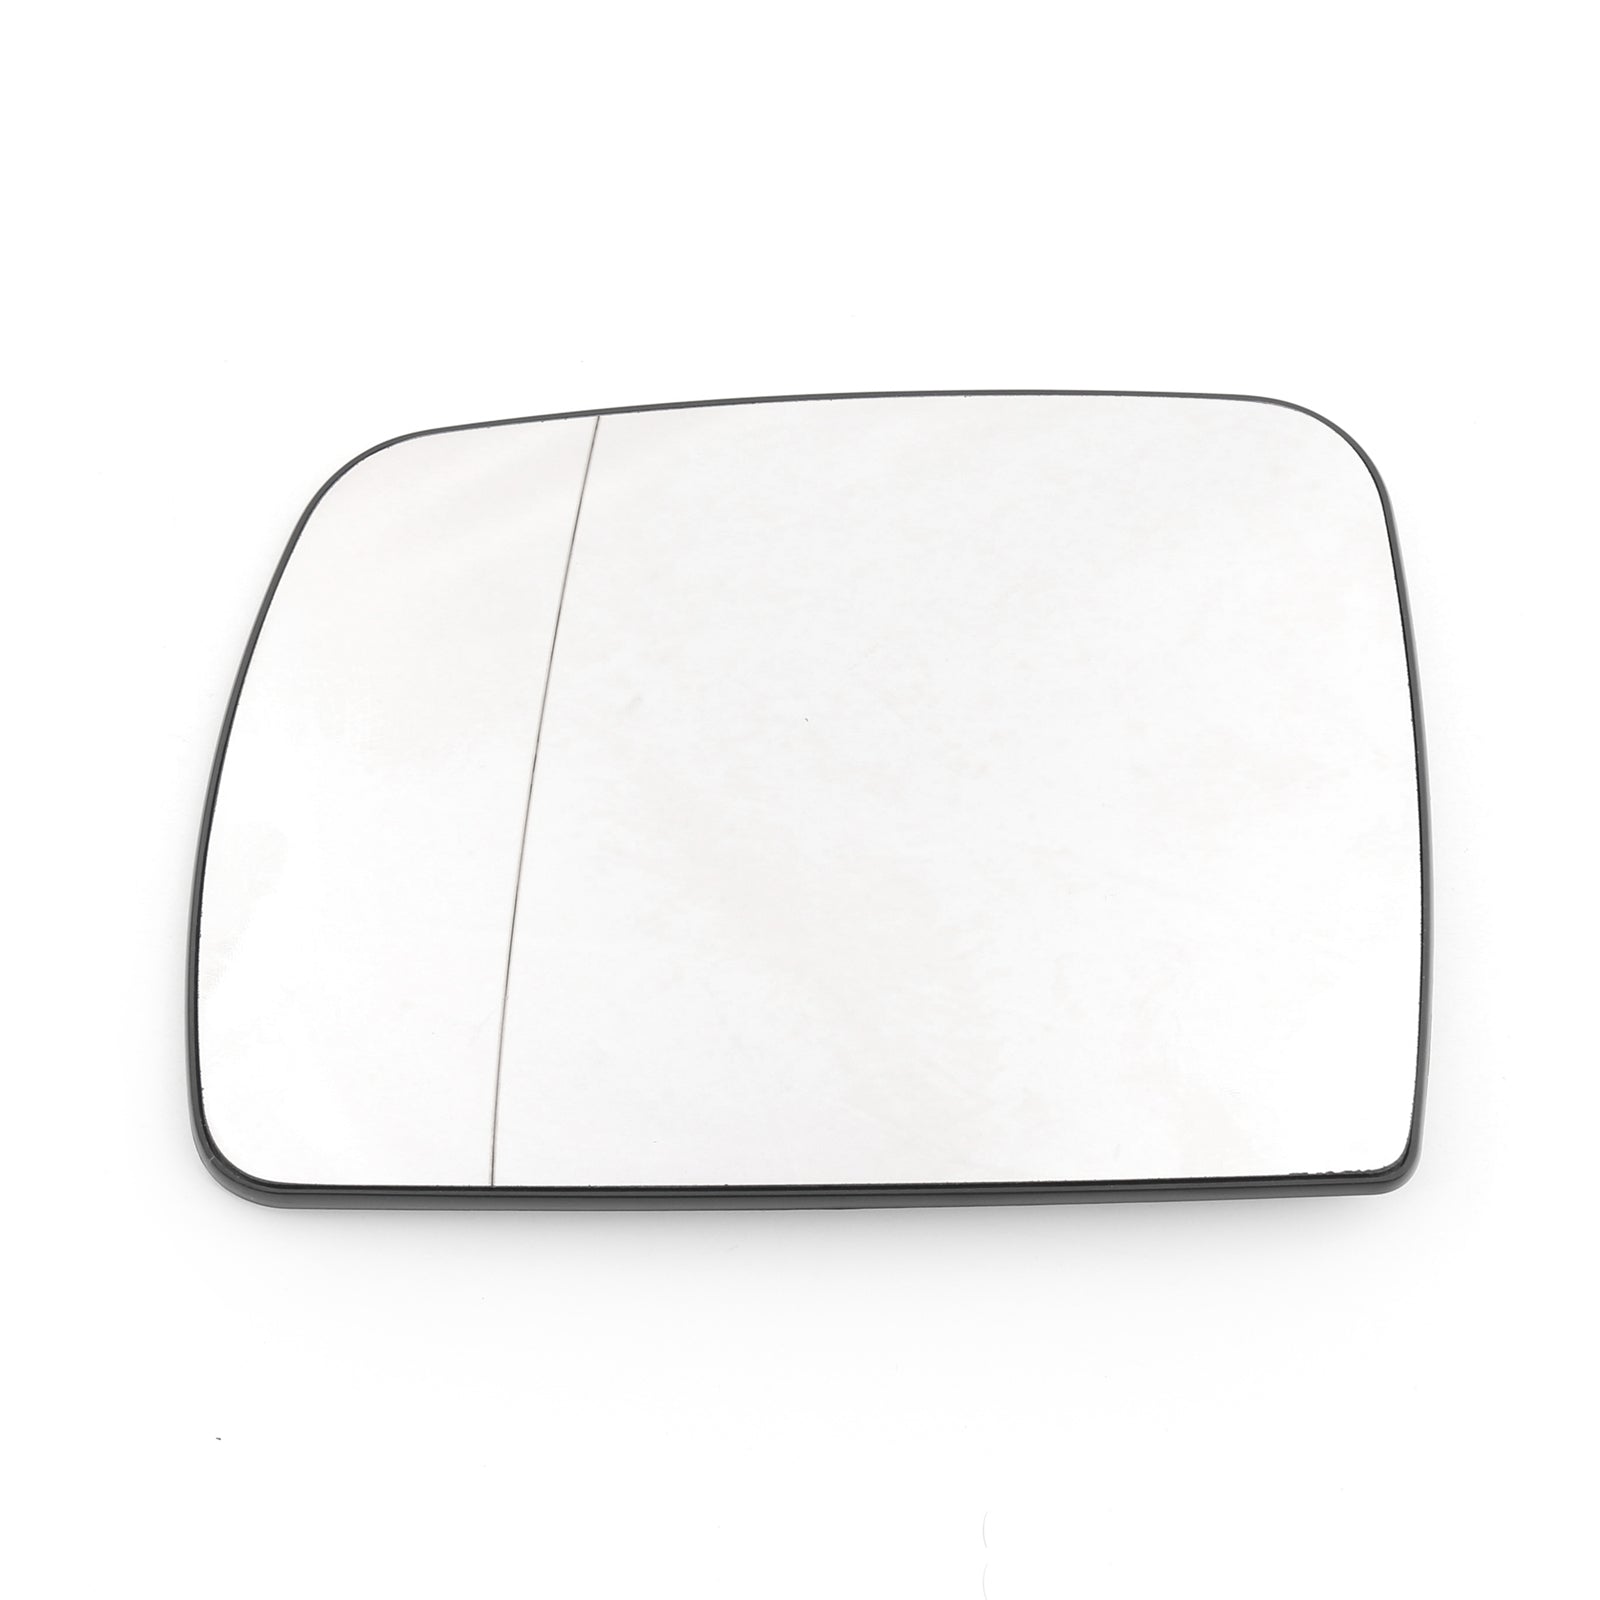 Vidrio de espejo con calefacción y placa trasera para BMW X5 E53 2000-2006 Genérico transparente